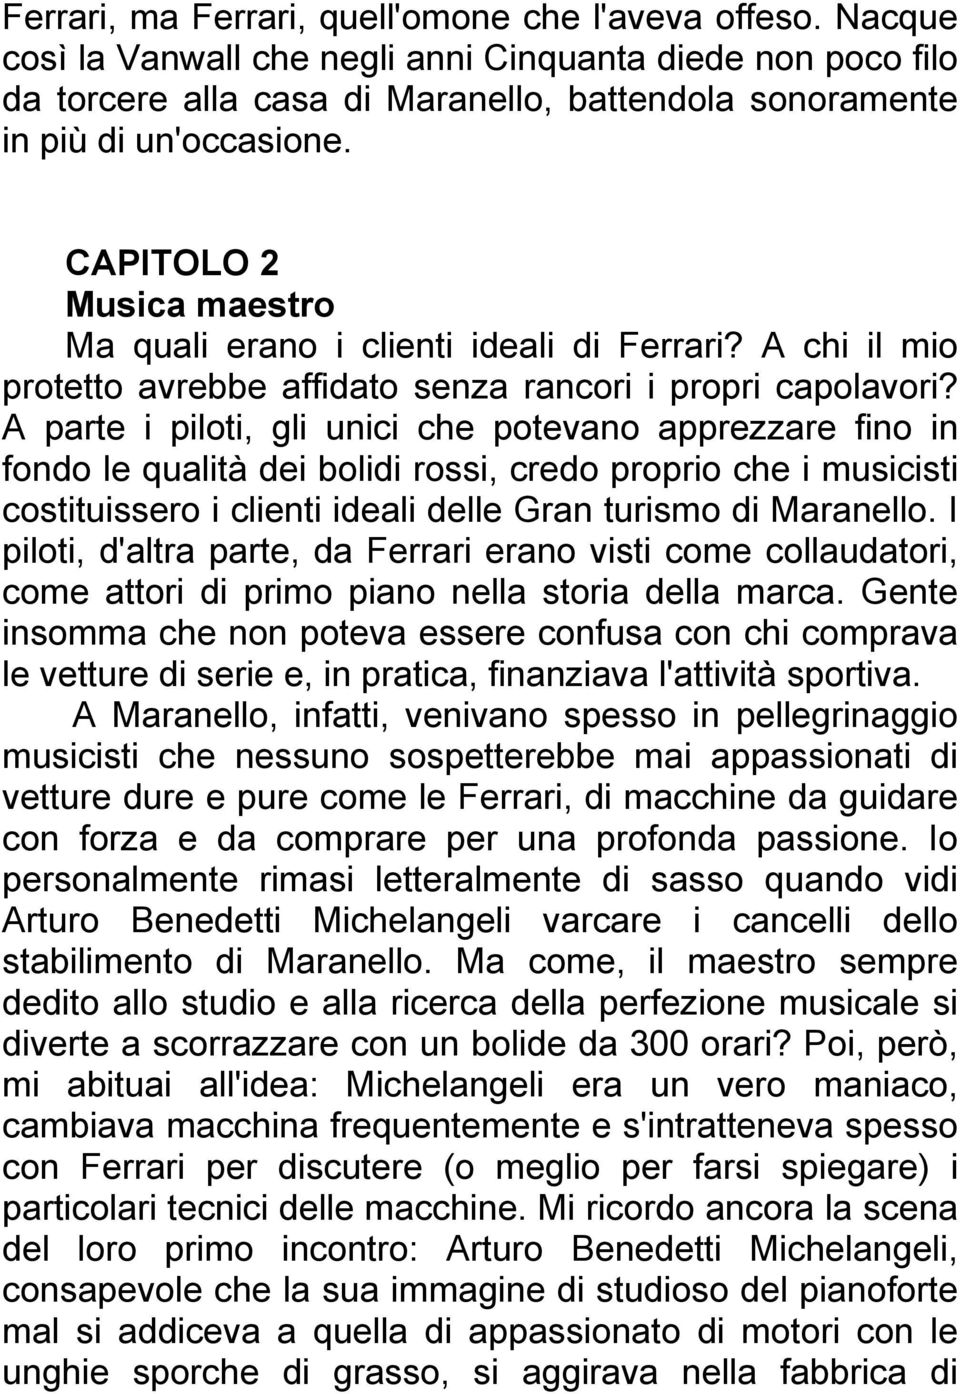 CAPITOLO 2 Musica maestro Ma quali erano i clienti ideali di Ferrari? A chi il mio protetto avrebbe affidato senza rancori i propri capolavori?